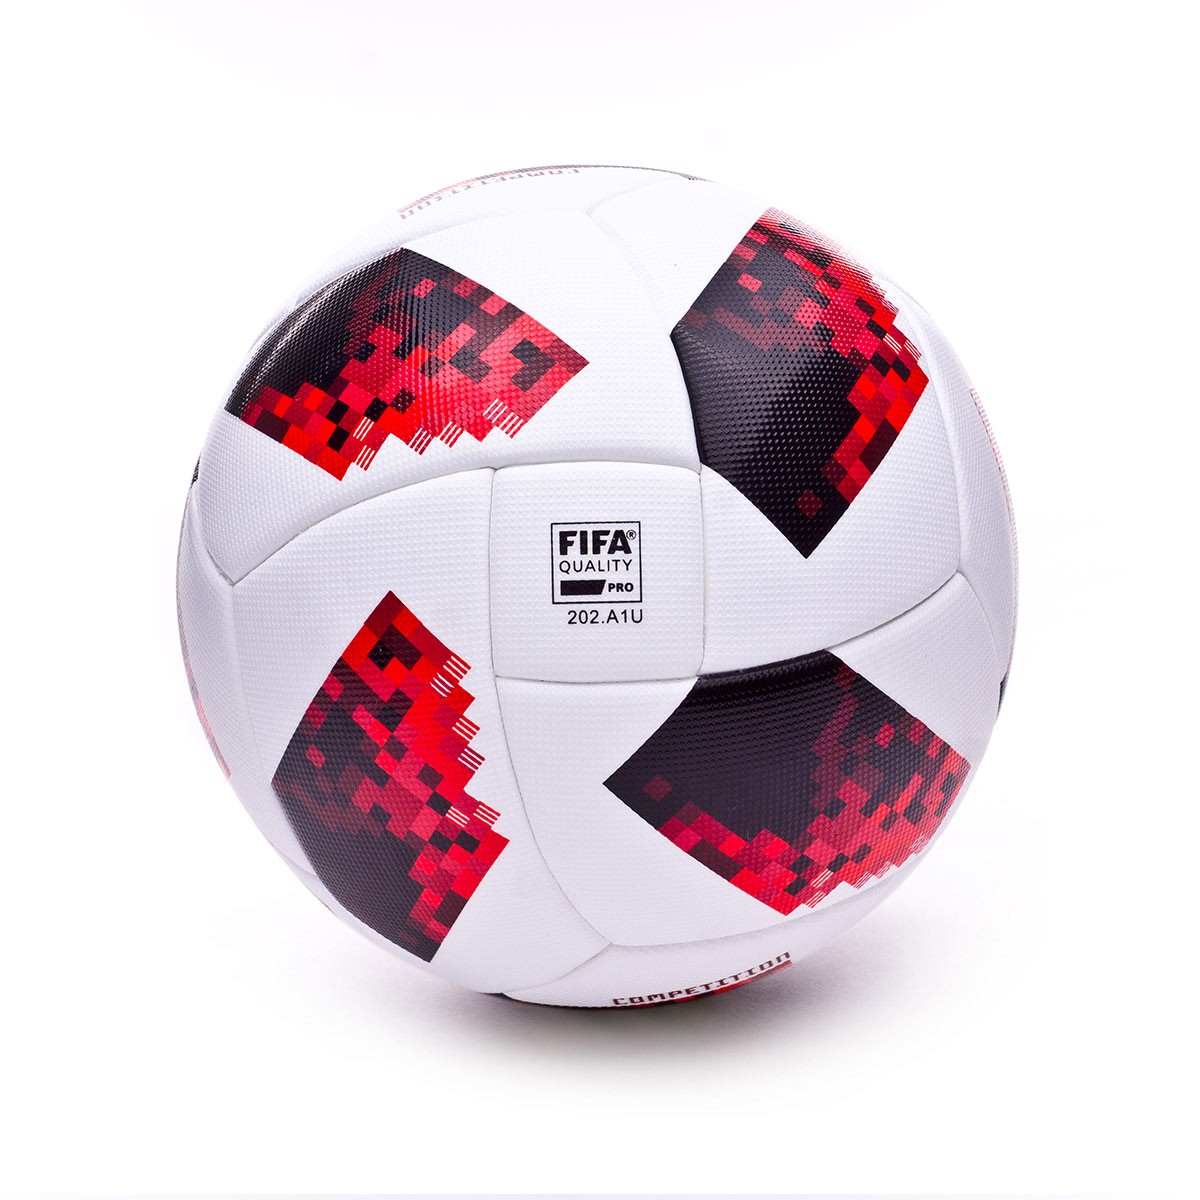 Мяч fifa quality pro. Adidas FIFA quality Pro 202. A1l. Adidas Telstar FIFA бесшовный. Мяч футбольный адидас ФИФА quality Pro 202.a1p. Адидас FIFA quality Pro.